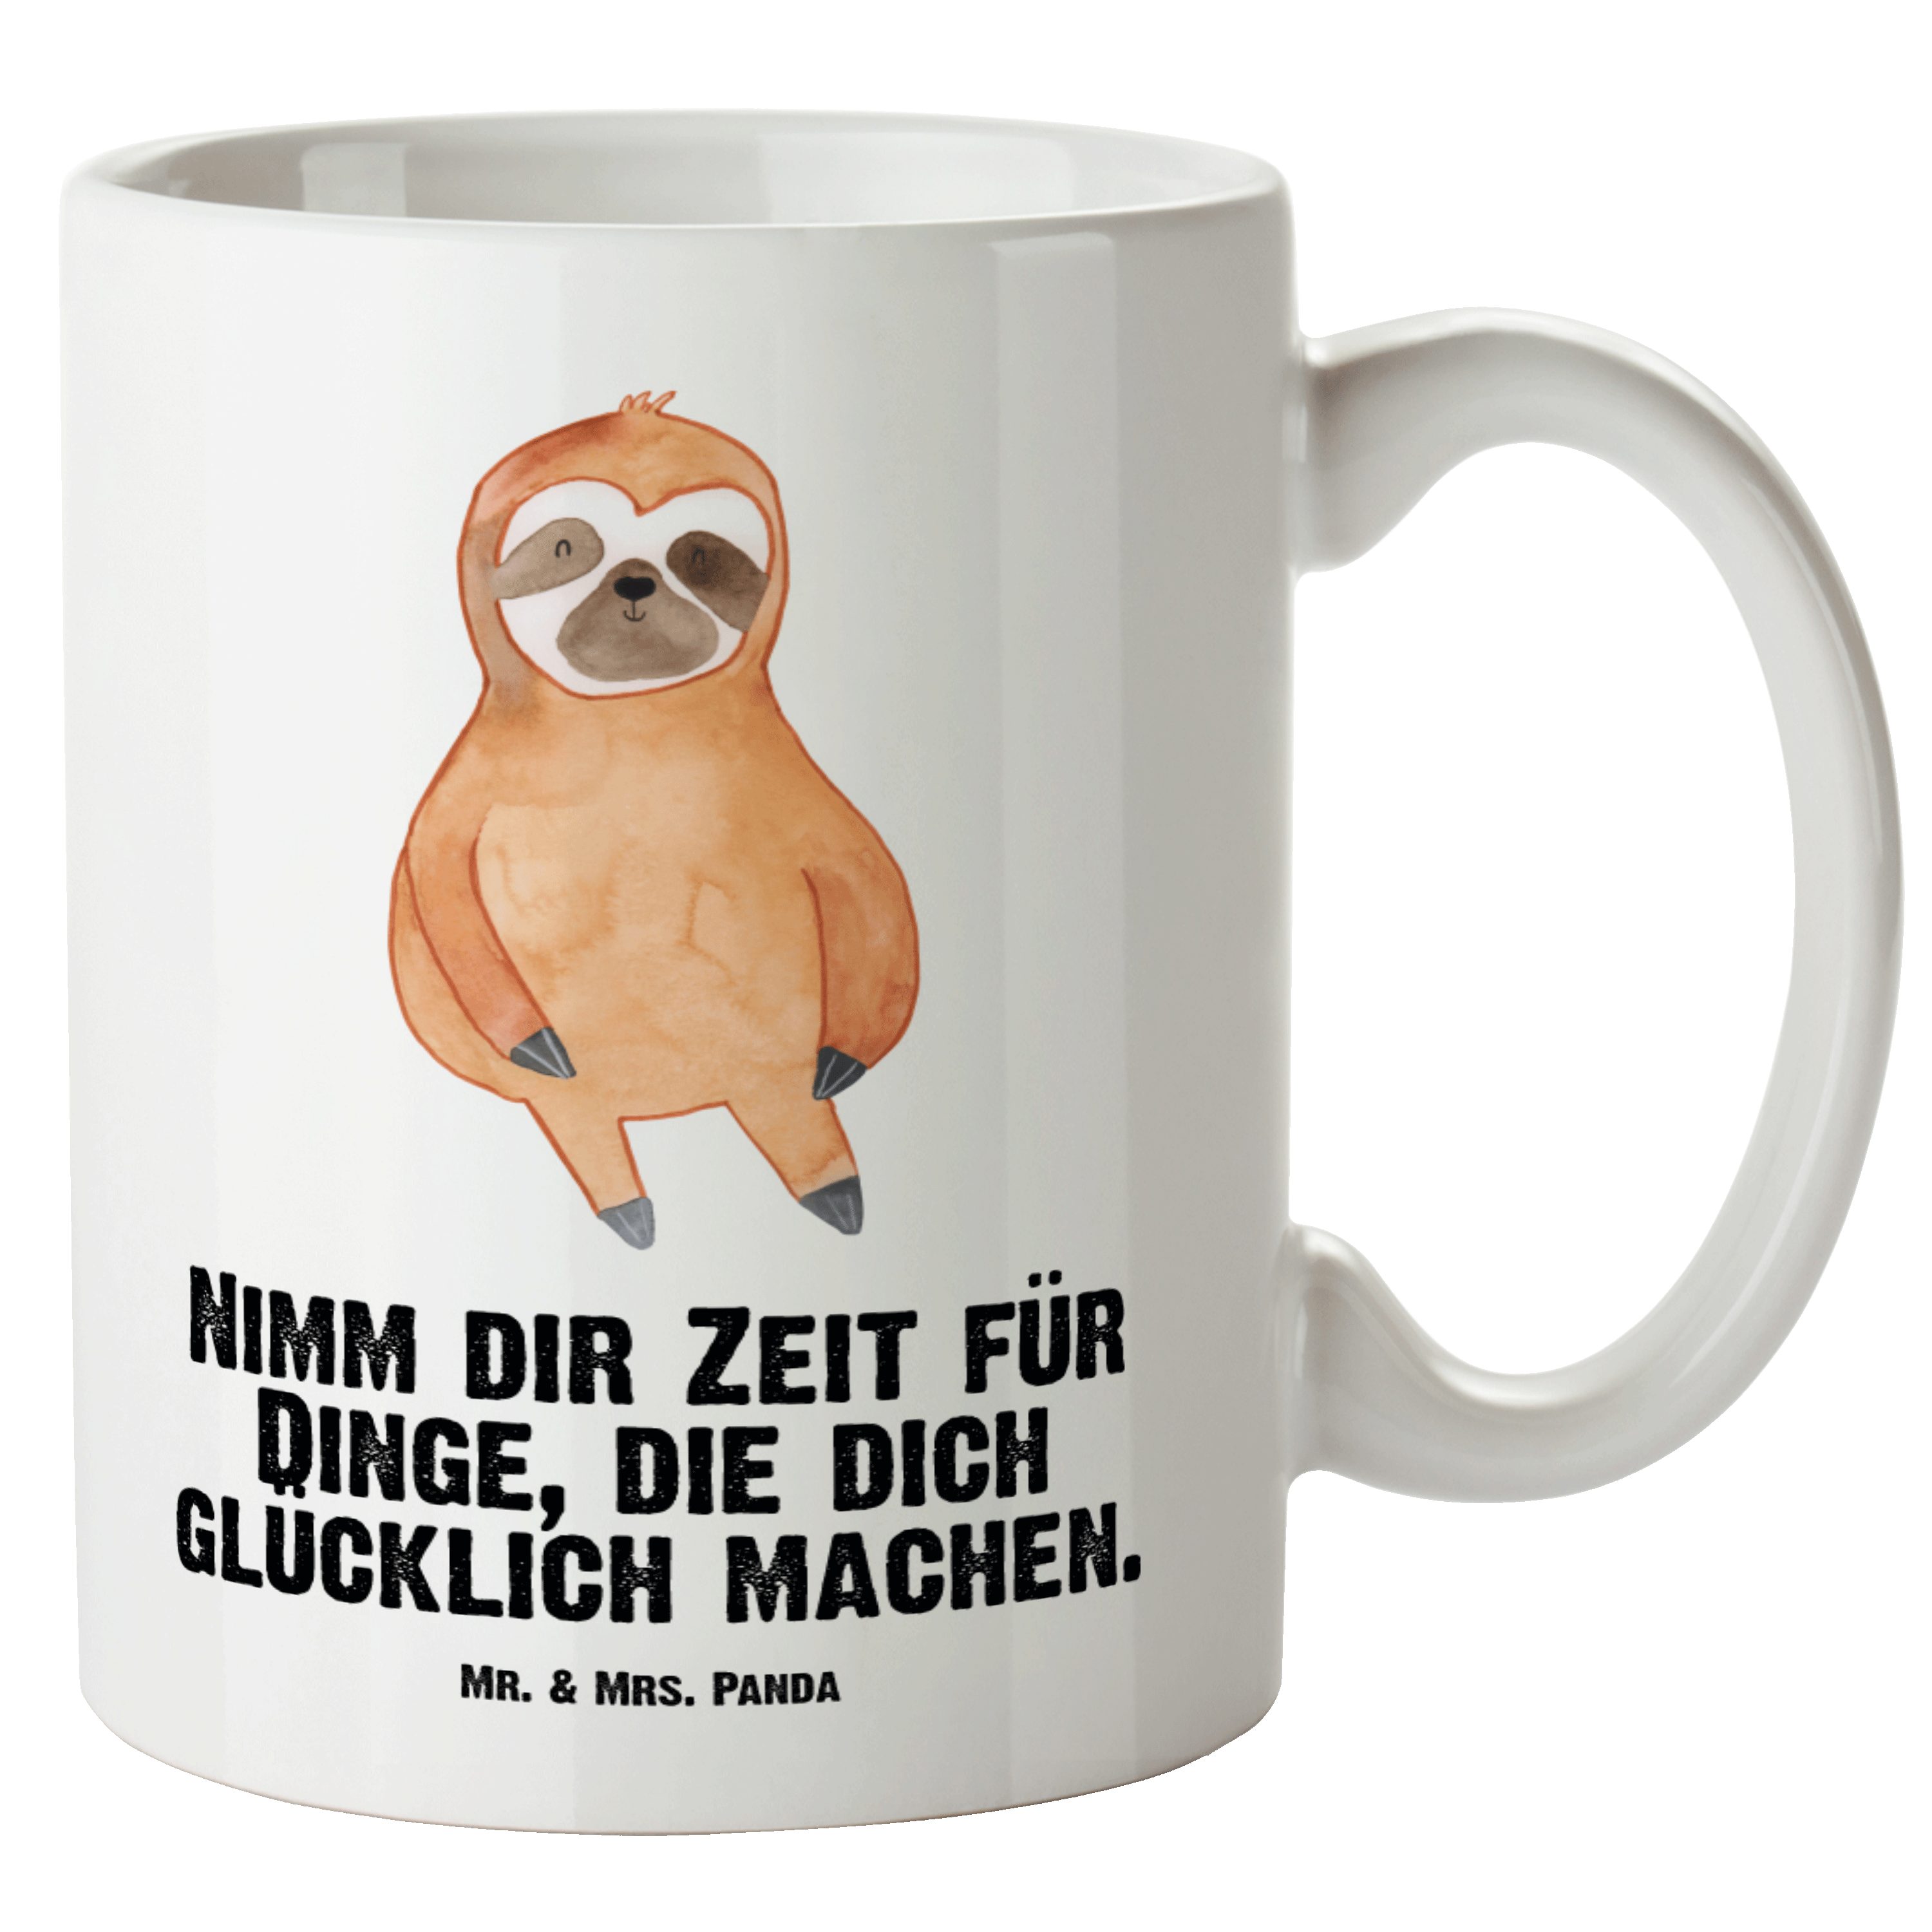 Mr. & Mrs. Panda Tasse Faultier Zufrieden - Weiß - Geschenk, Glück, Ruhe, happy, Grosse Kaff, XL Tasse Keramik